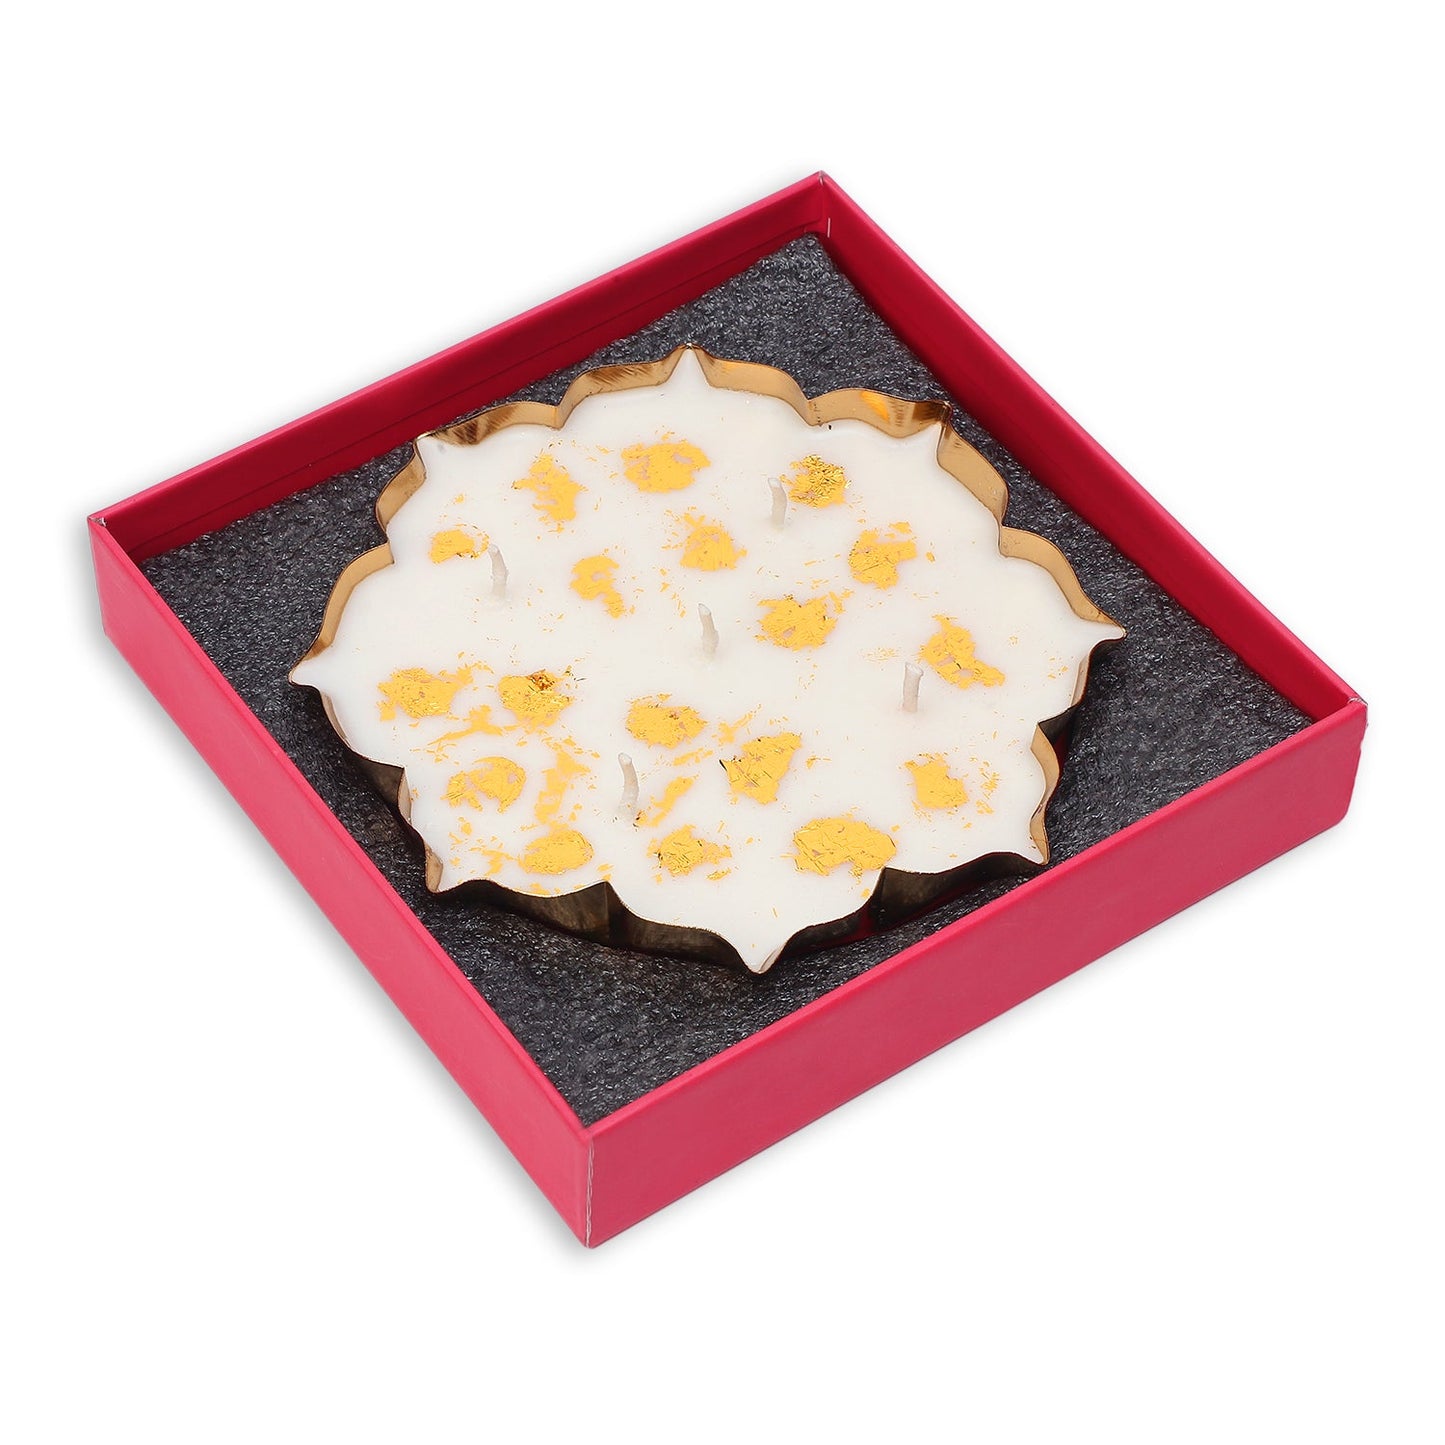 Bulk Buy Single Lotus Urli Candle Gift Set (Oudh fragrance) || Festival gift set || ( 20 box Master Pack)